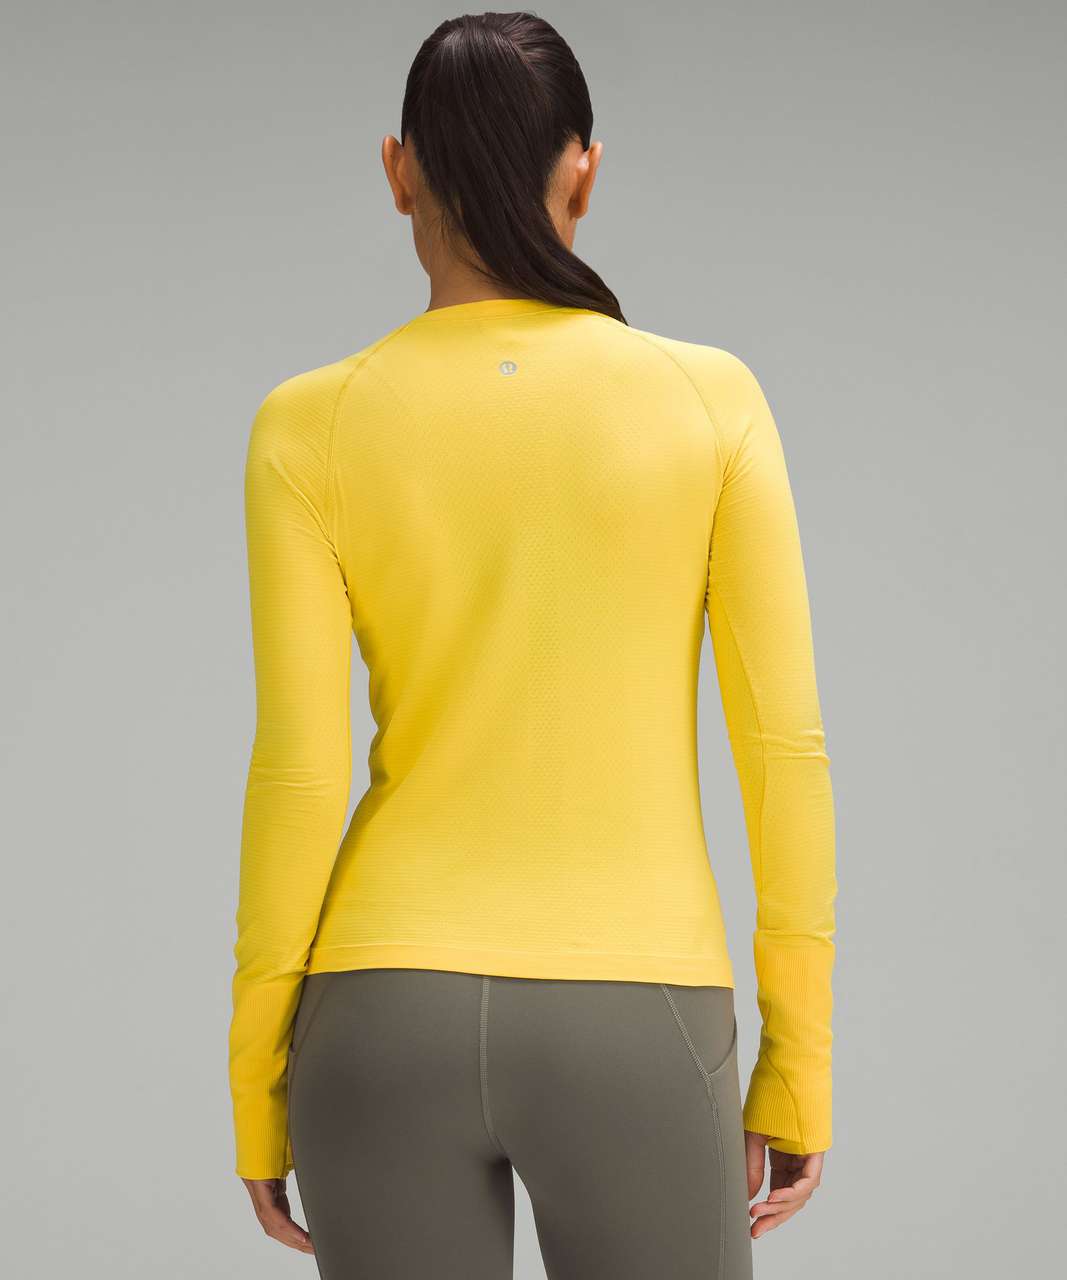 Lululemon Swiftly Tech Long-Sleeve Shirt 2.0 *Race Length - Utility Yellow / Utility Yellow